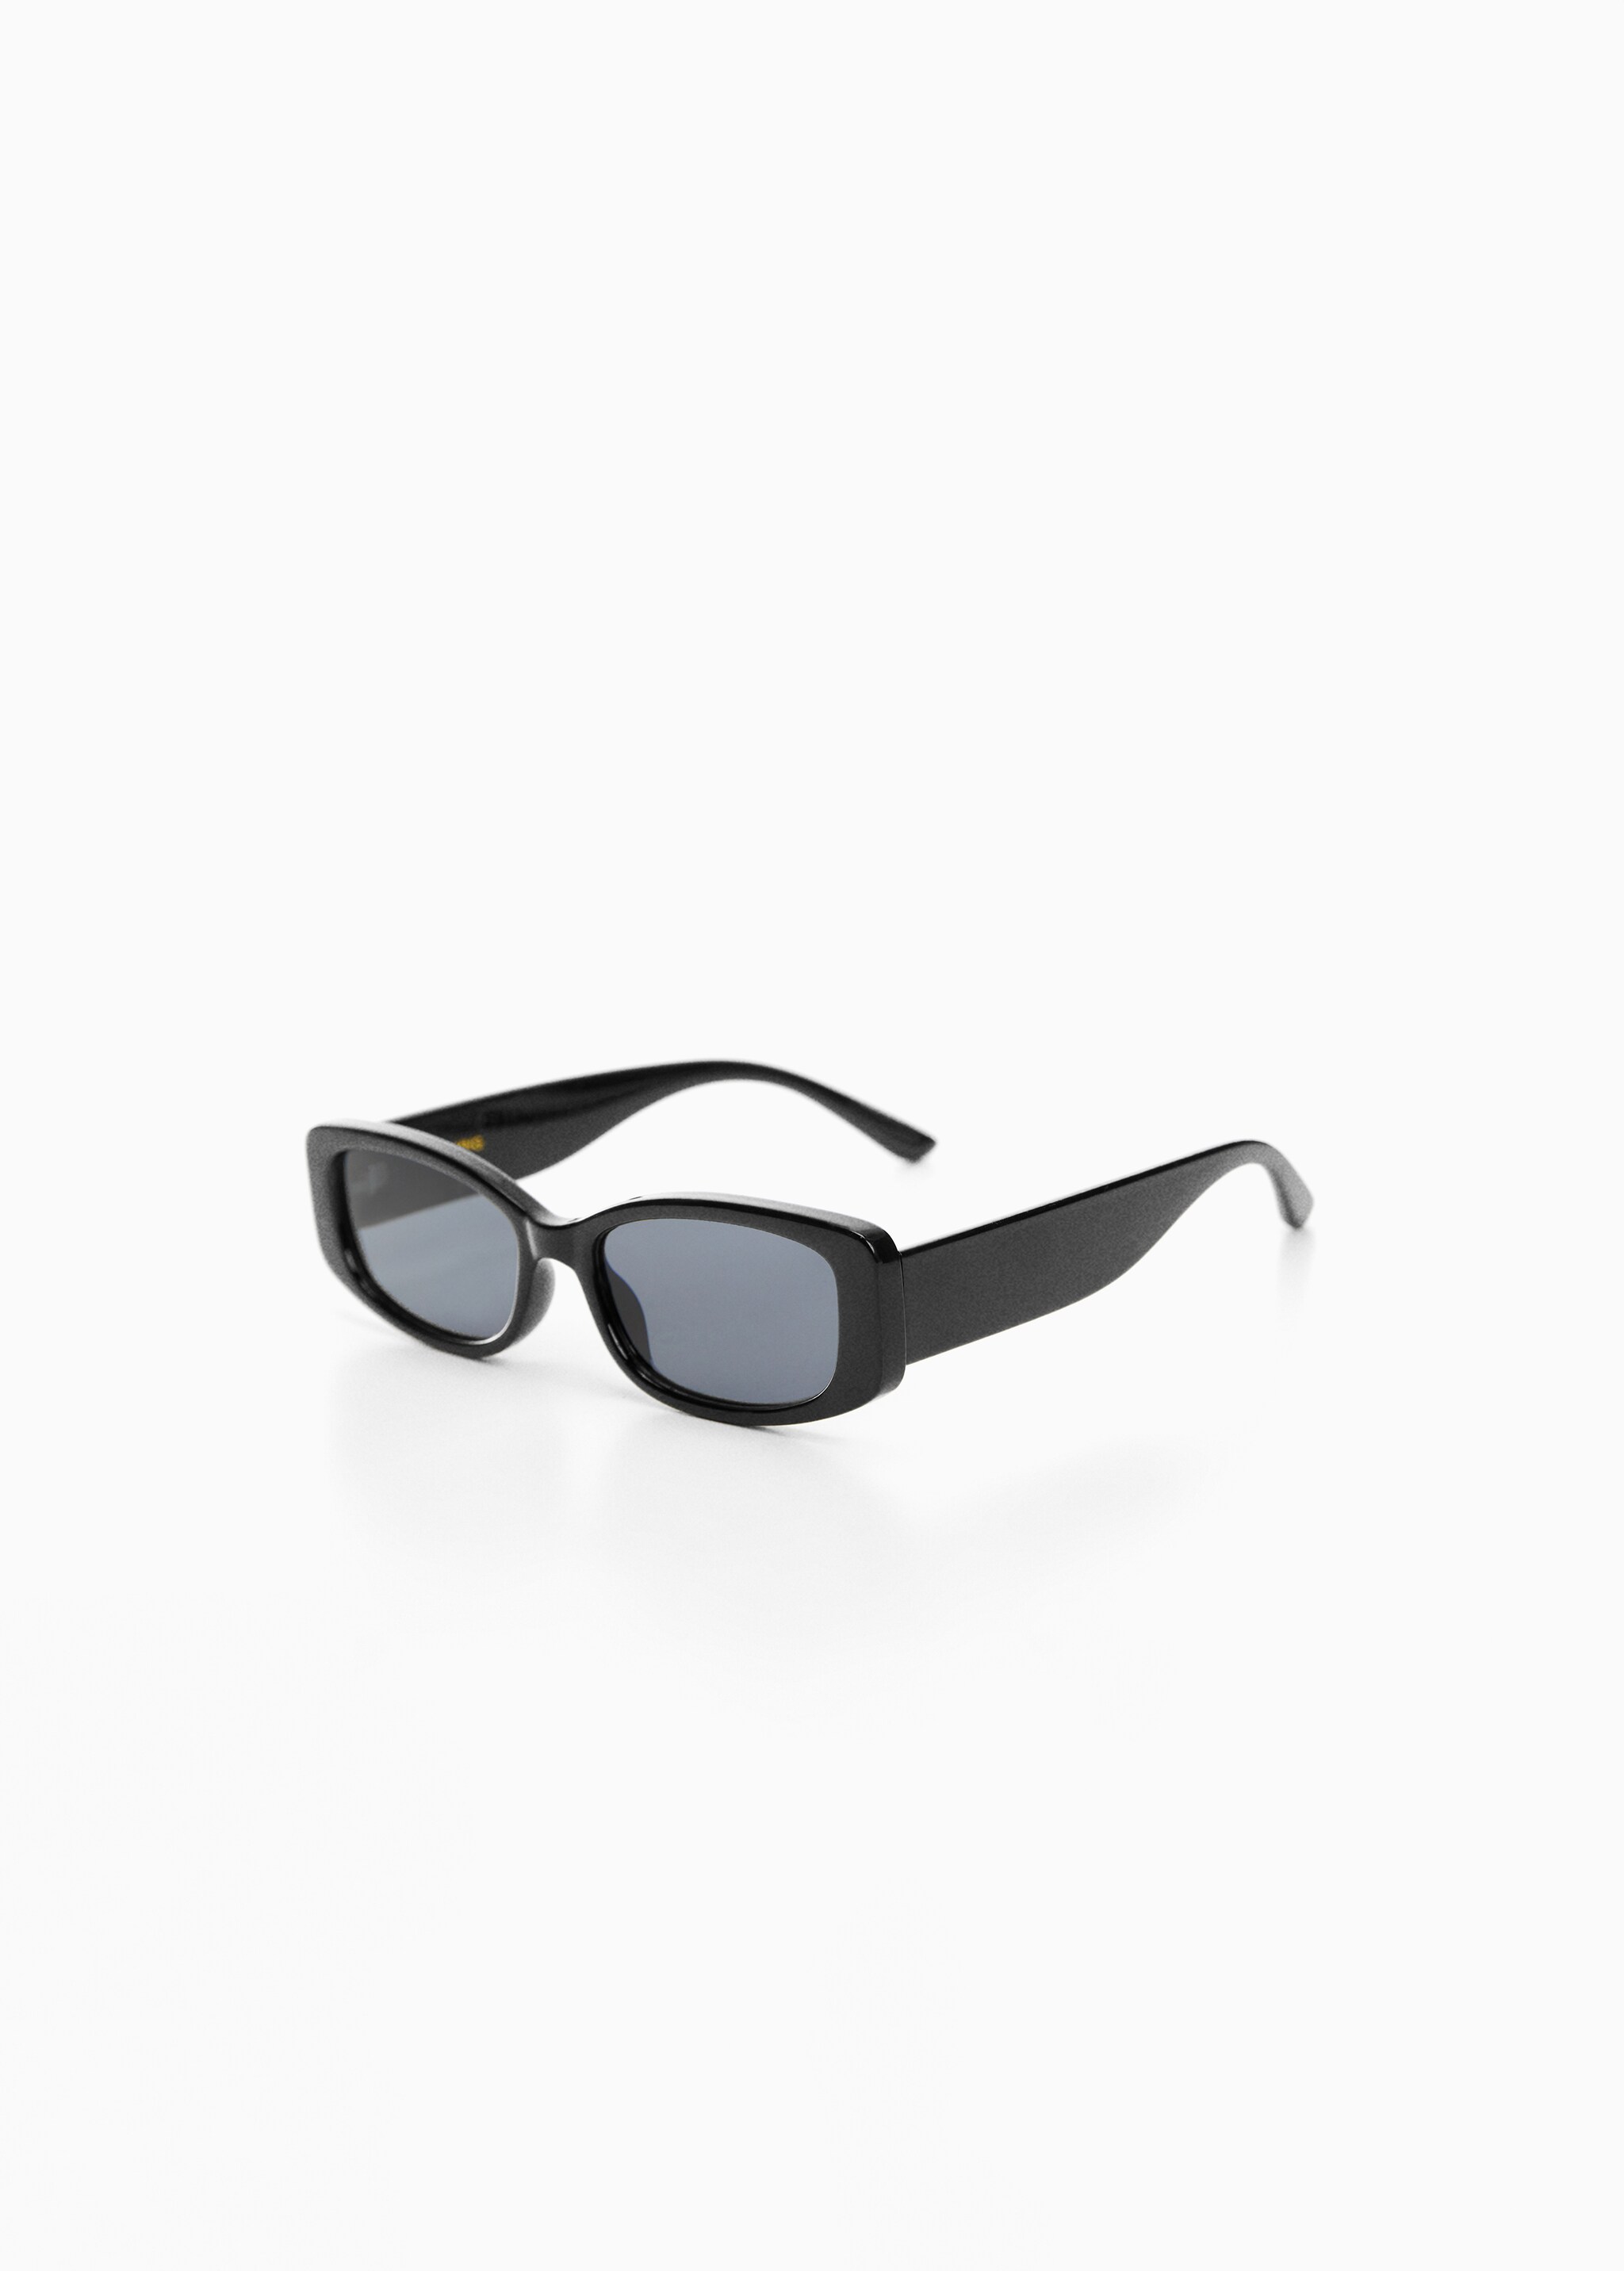 Rectangular sunglasses - Medium plane